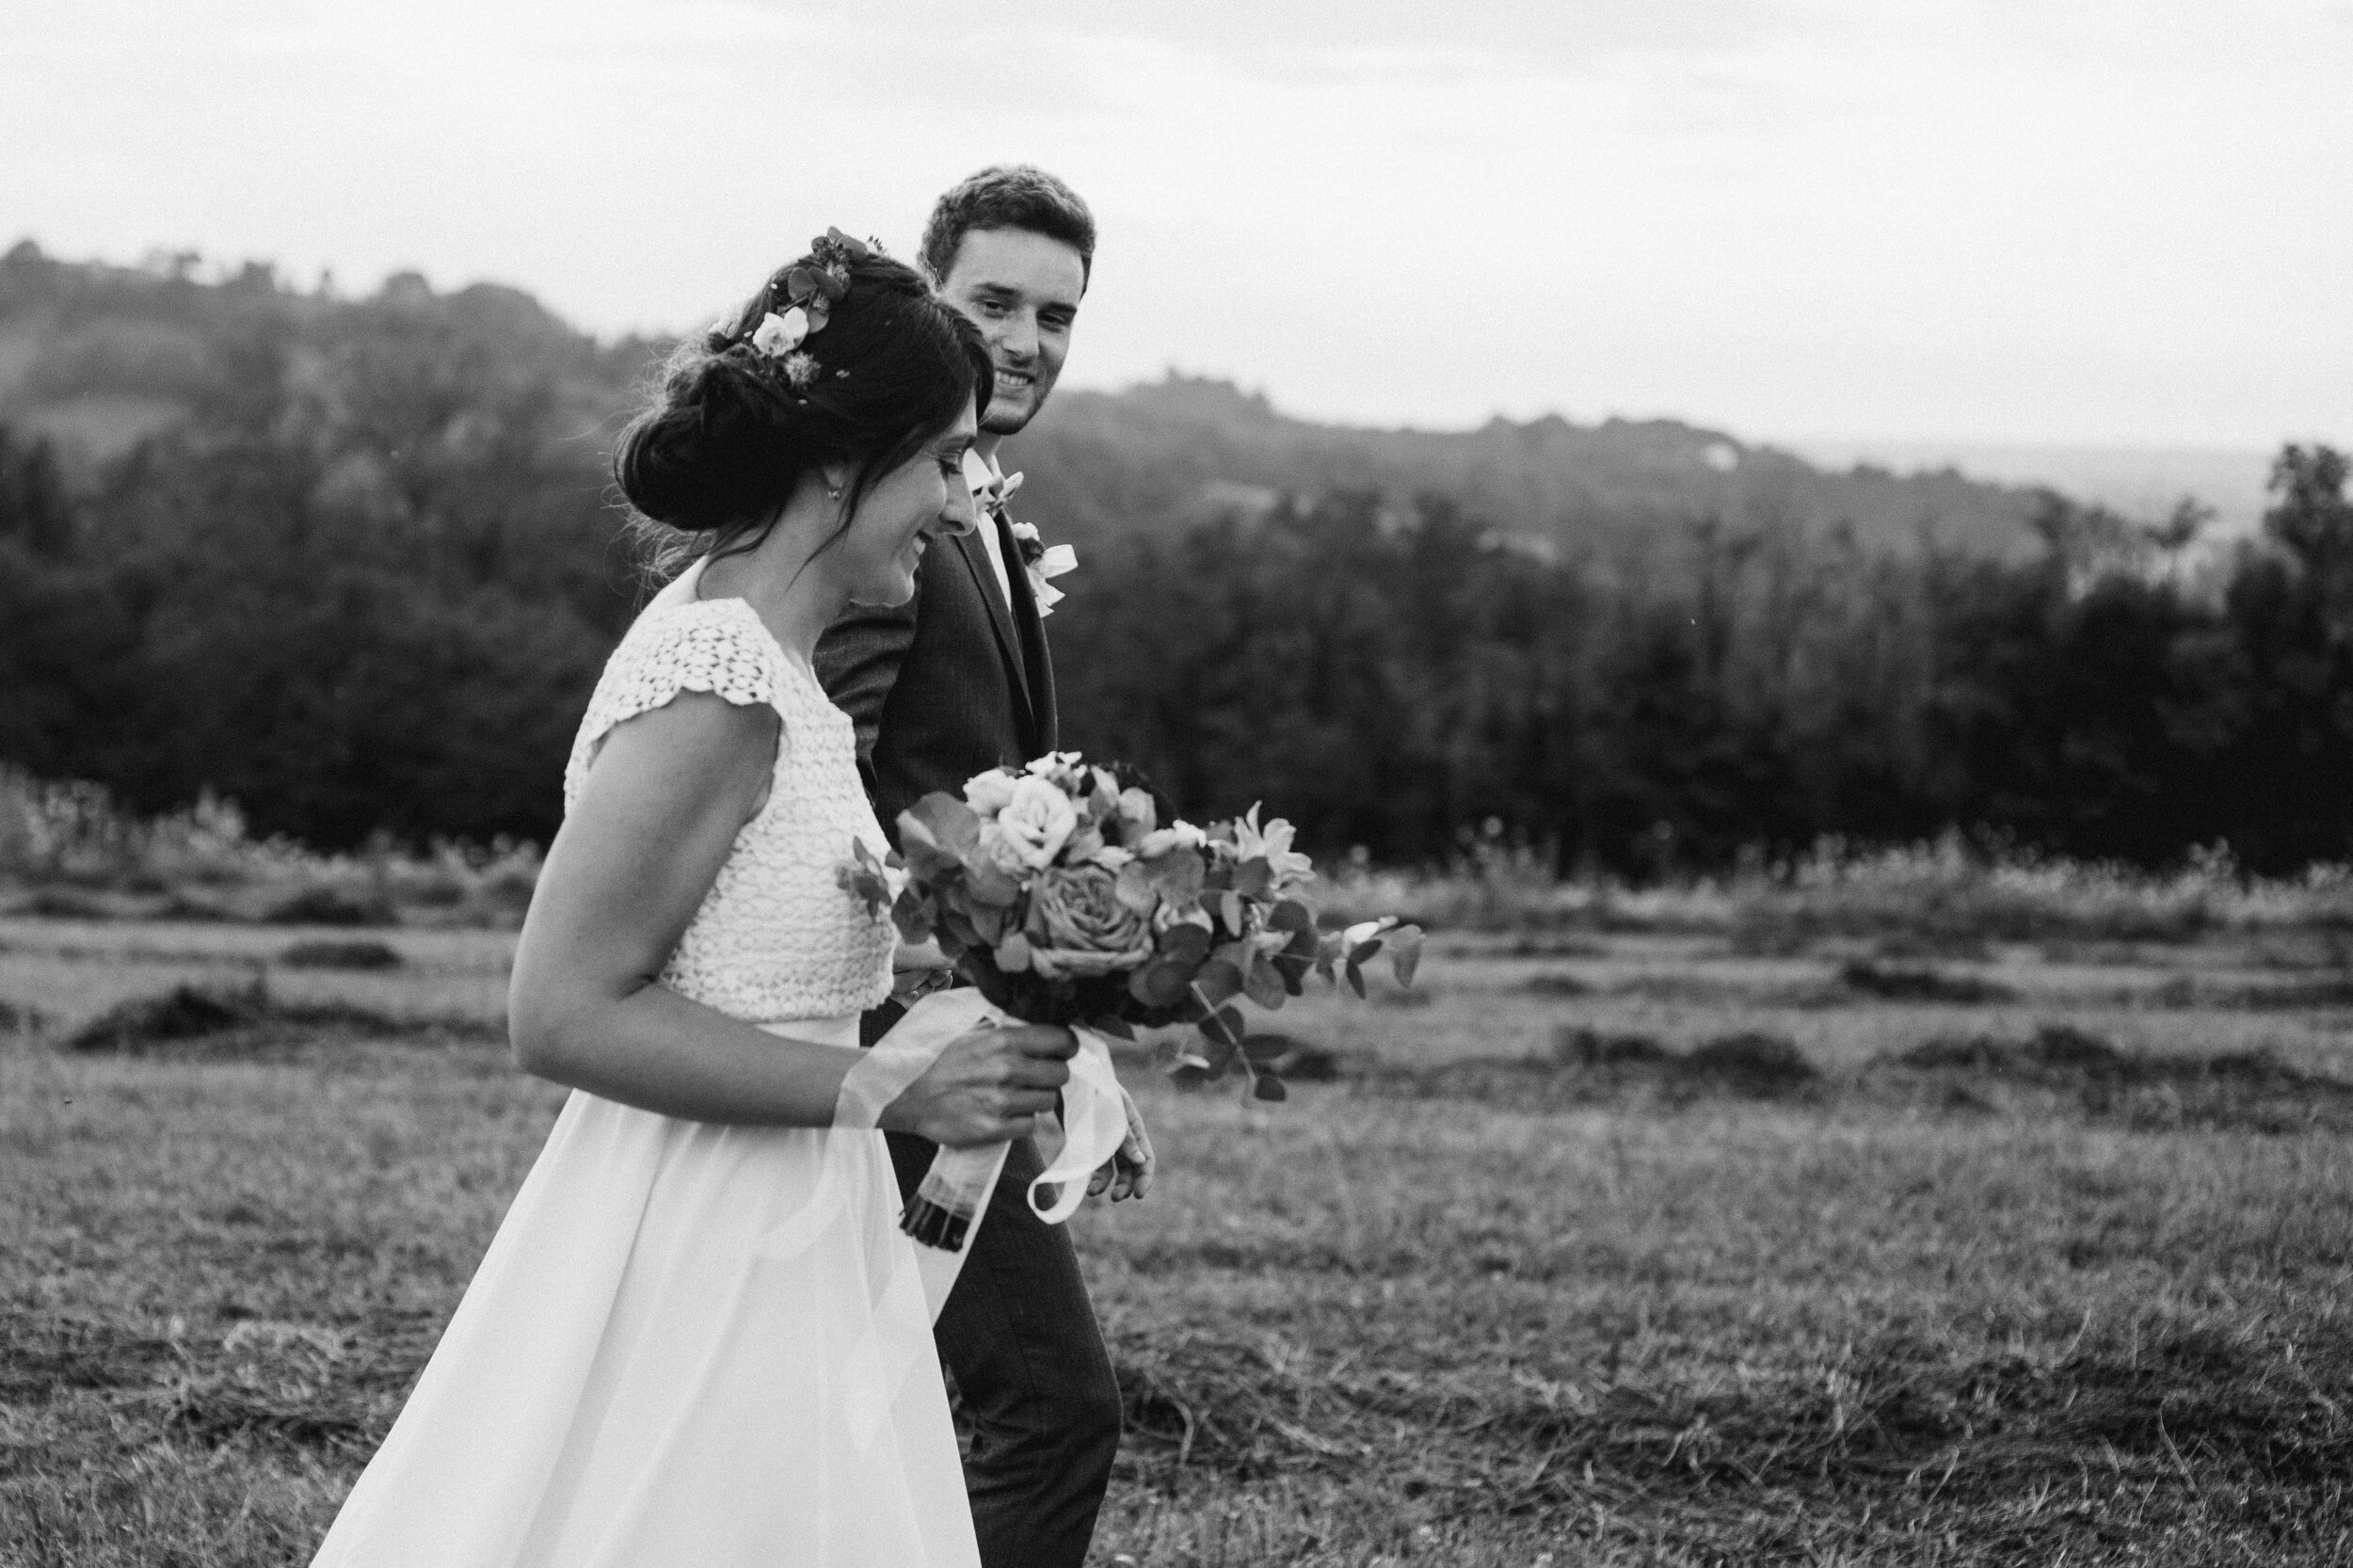 069 - Matrimonio in provincia di Cuneo - Miriam Callegari Fotografa.JPG